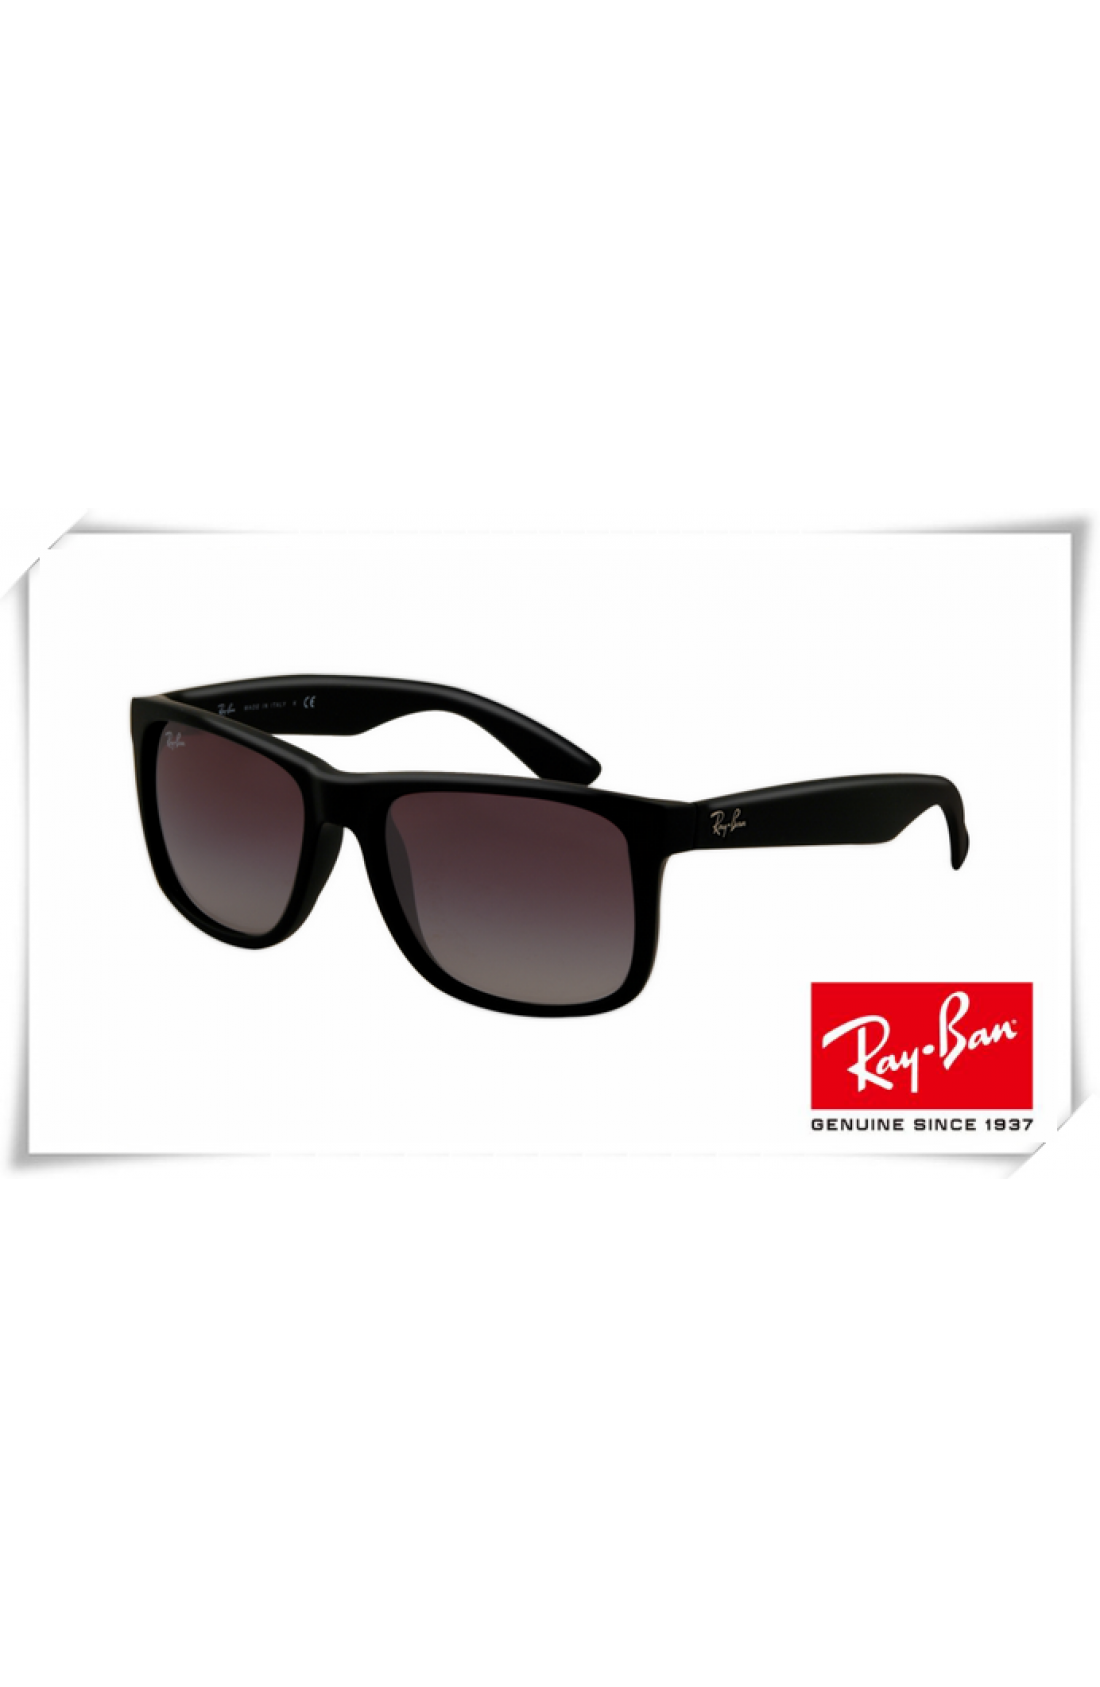 Fake Ray Ban RB4165 Justin Sunglasses 